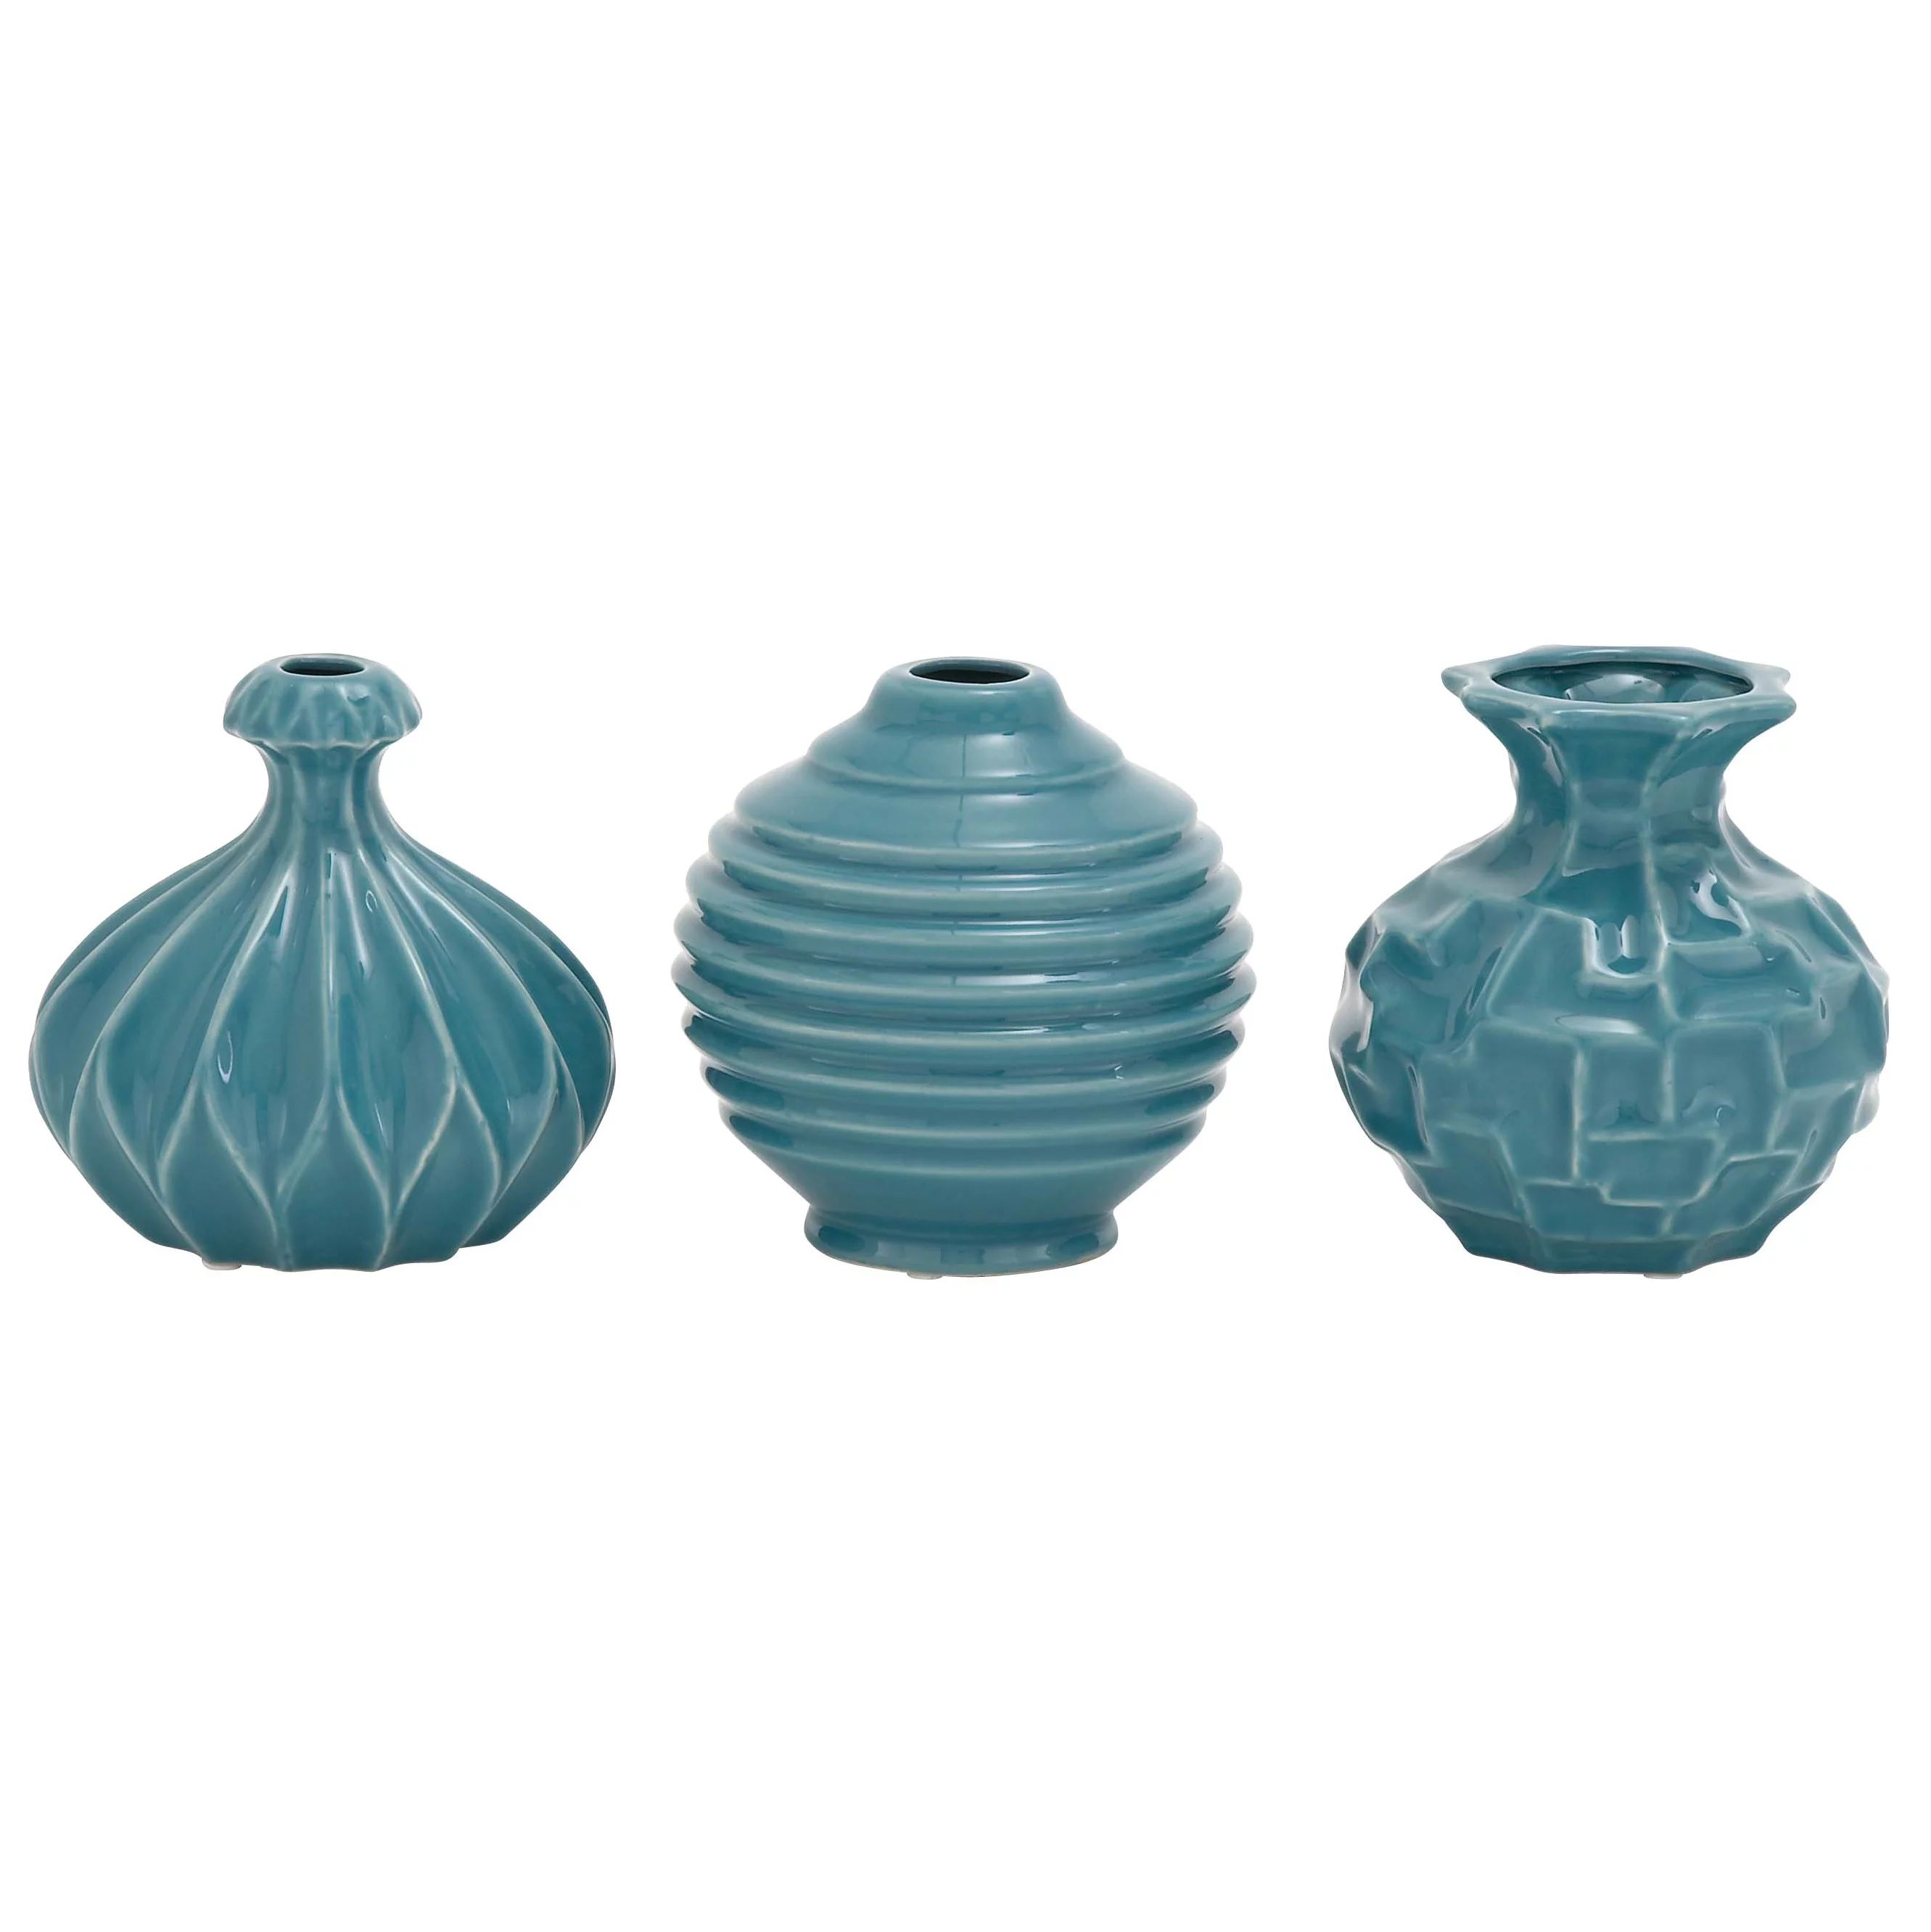 DecMode 6"W, 6"H Blue Ceramic Vase with Varying Patterns, Set of 3 | Walmart (US)